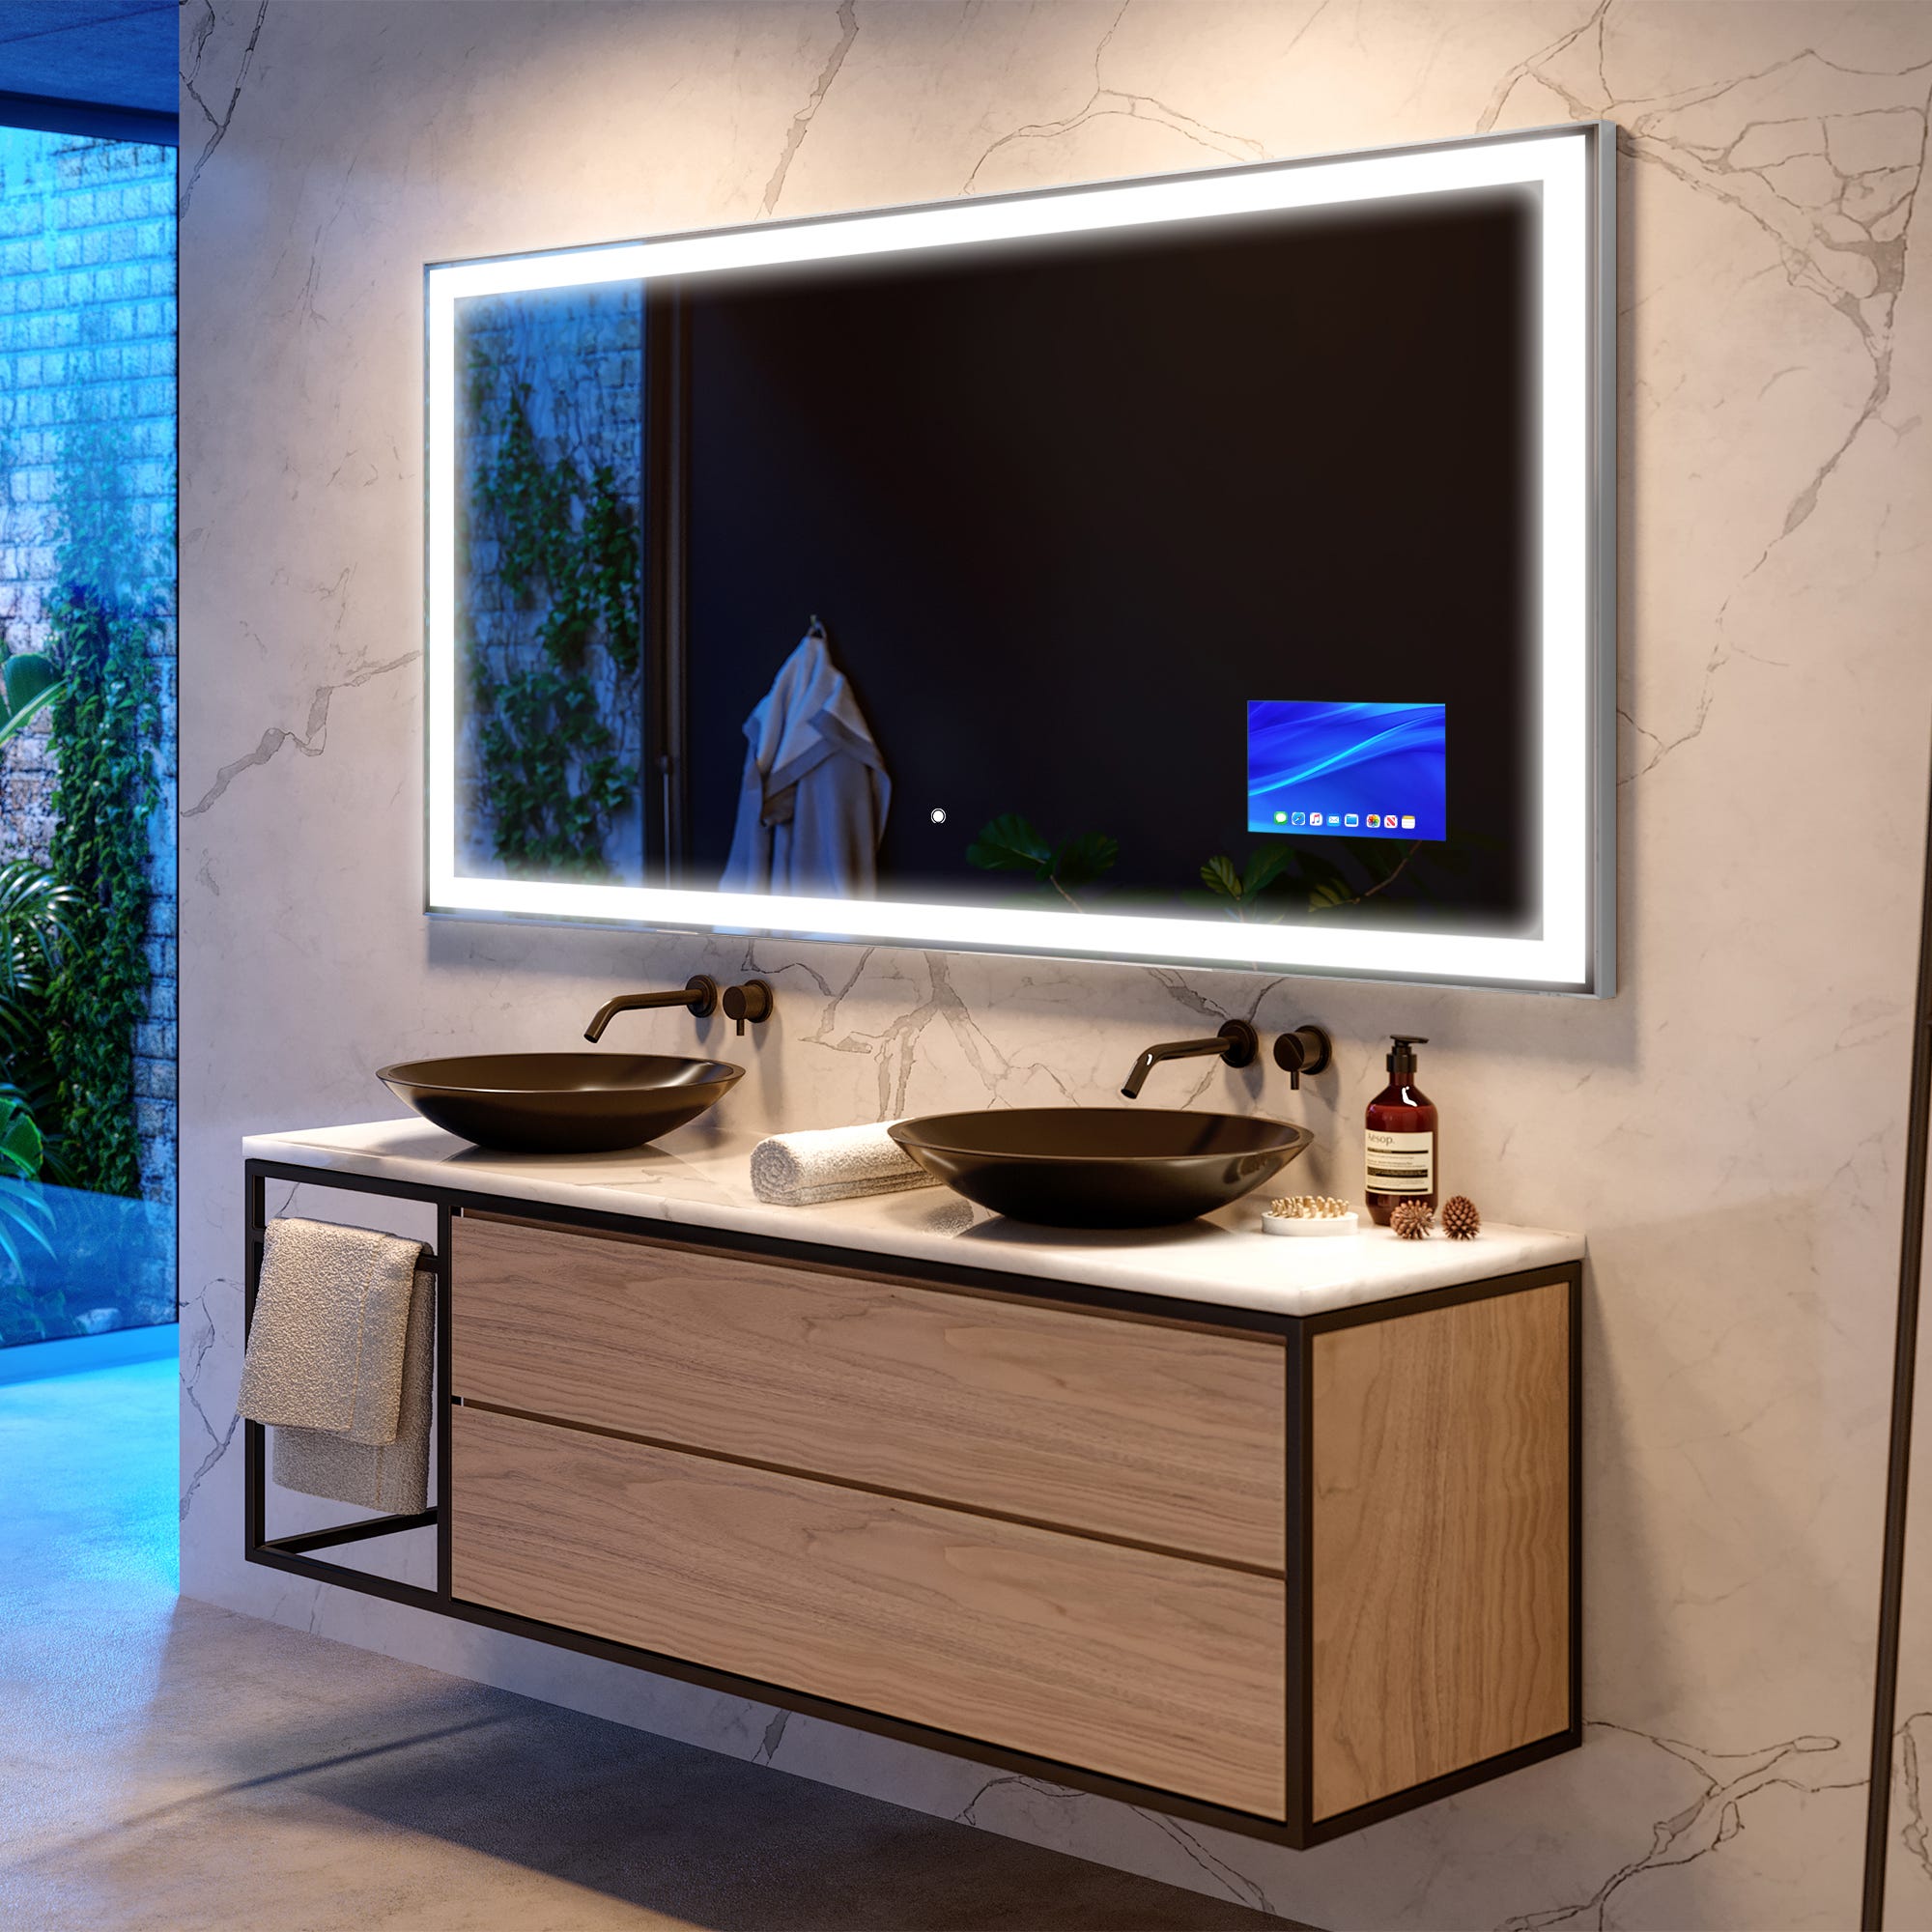 Espejos Inteligentes, bluetooth e iluminación Led para tu baño -  Iluminación.Net